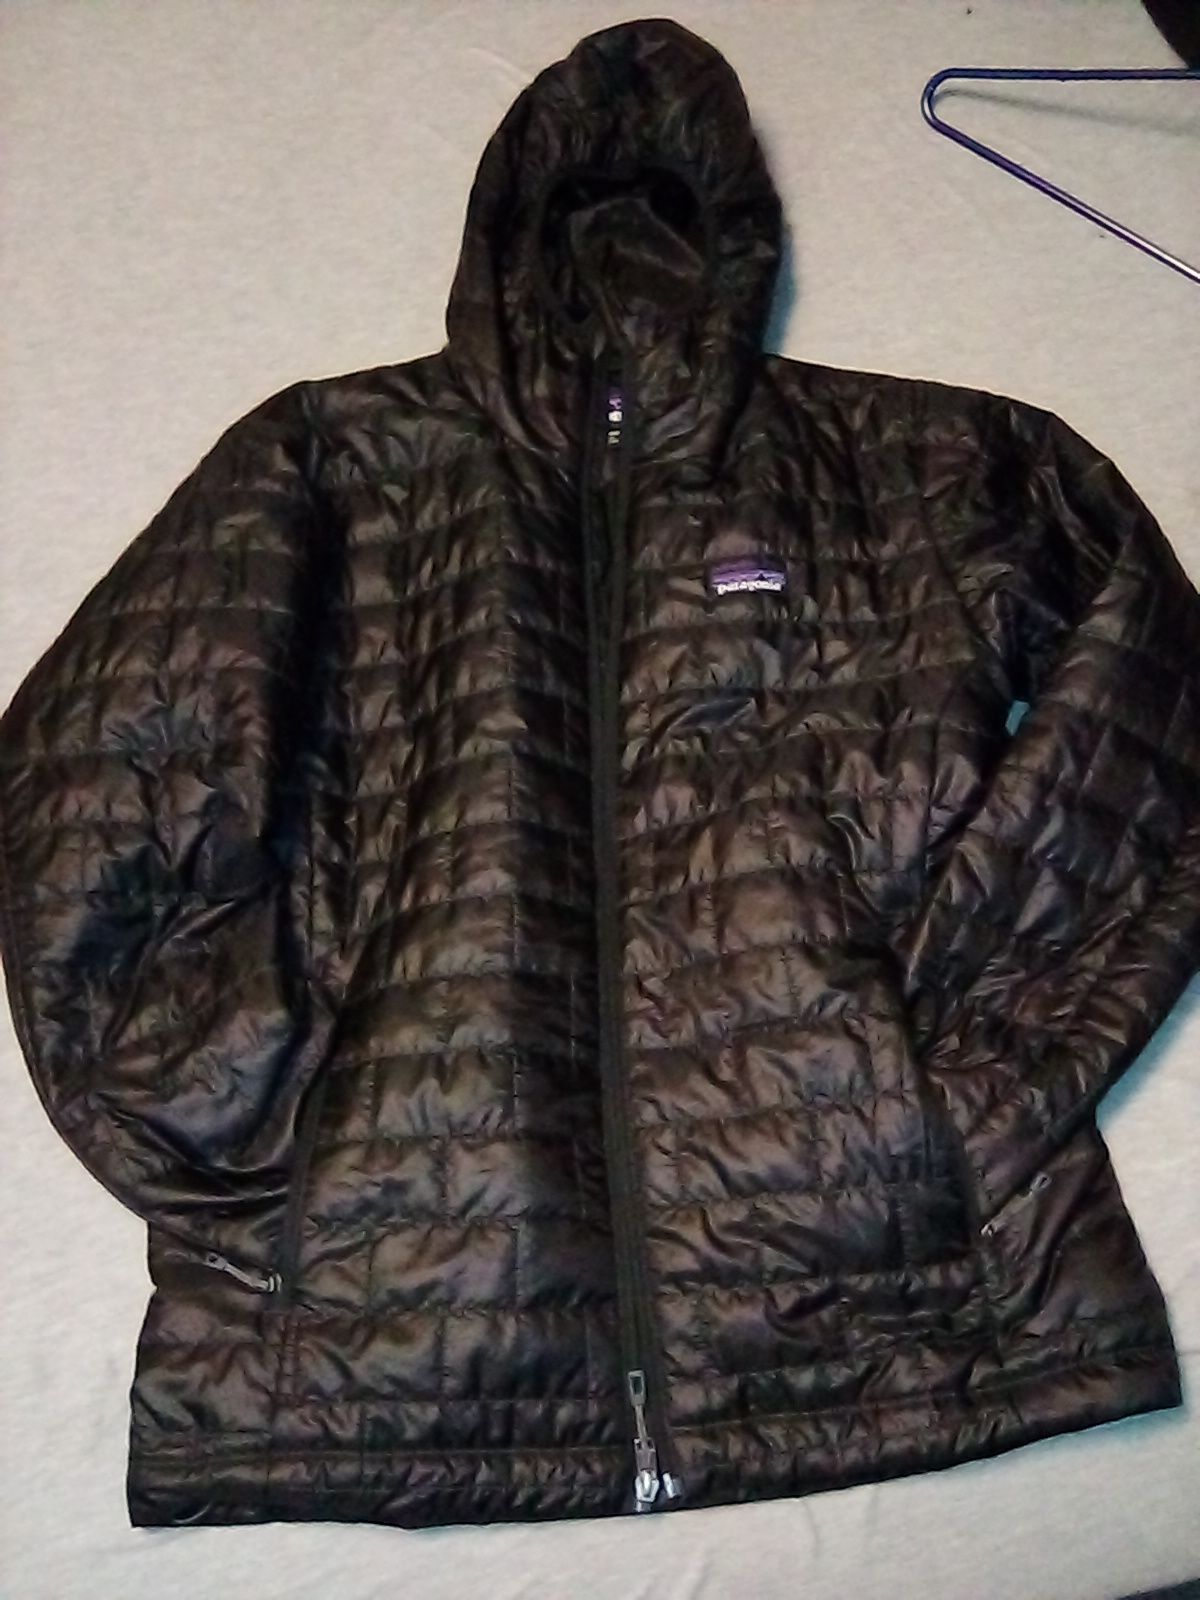 Patagonia men's nano puff hoody jacket